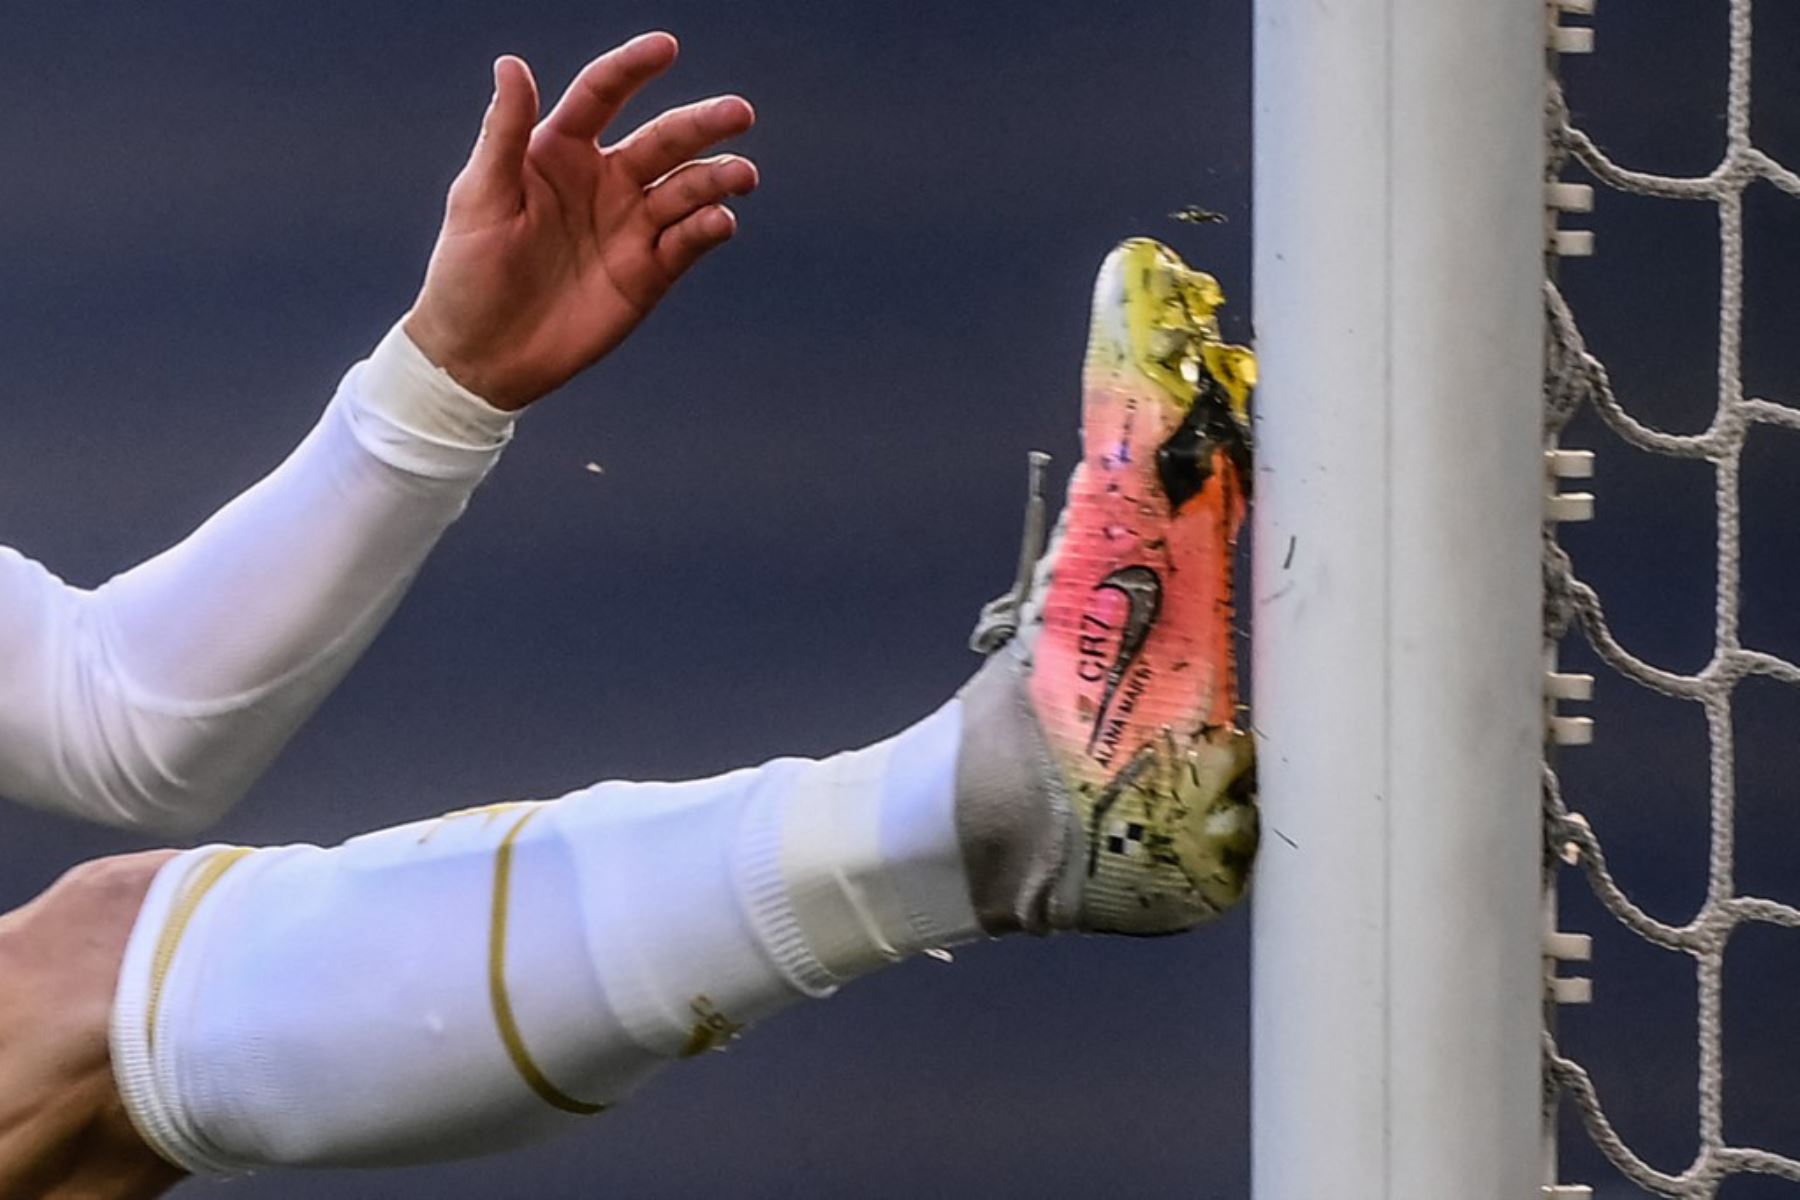 El delantero portugués de la Juventus, Cristiano Ronaldo, patea el poste después de perder una oportunidad de gol durante el partido de fútbol de la Serie A italiana Juventus vs Napoli.

Foto:AFP